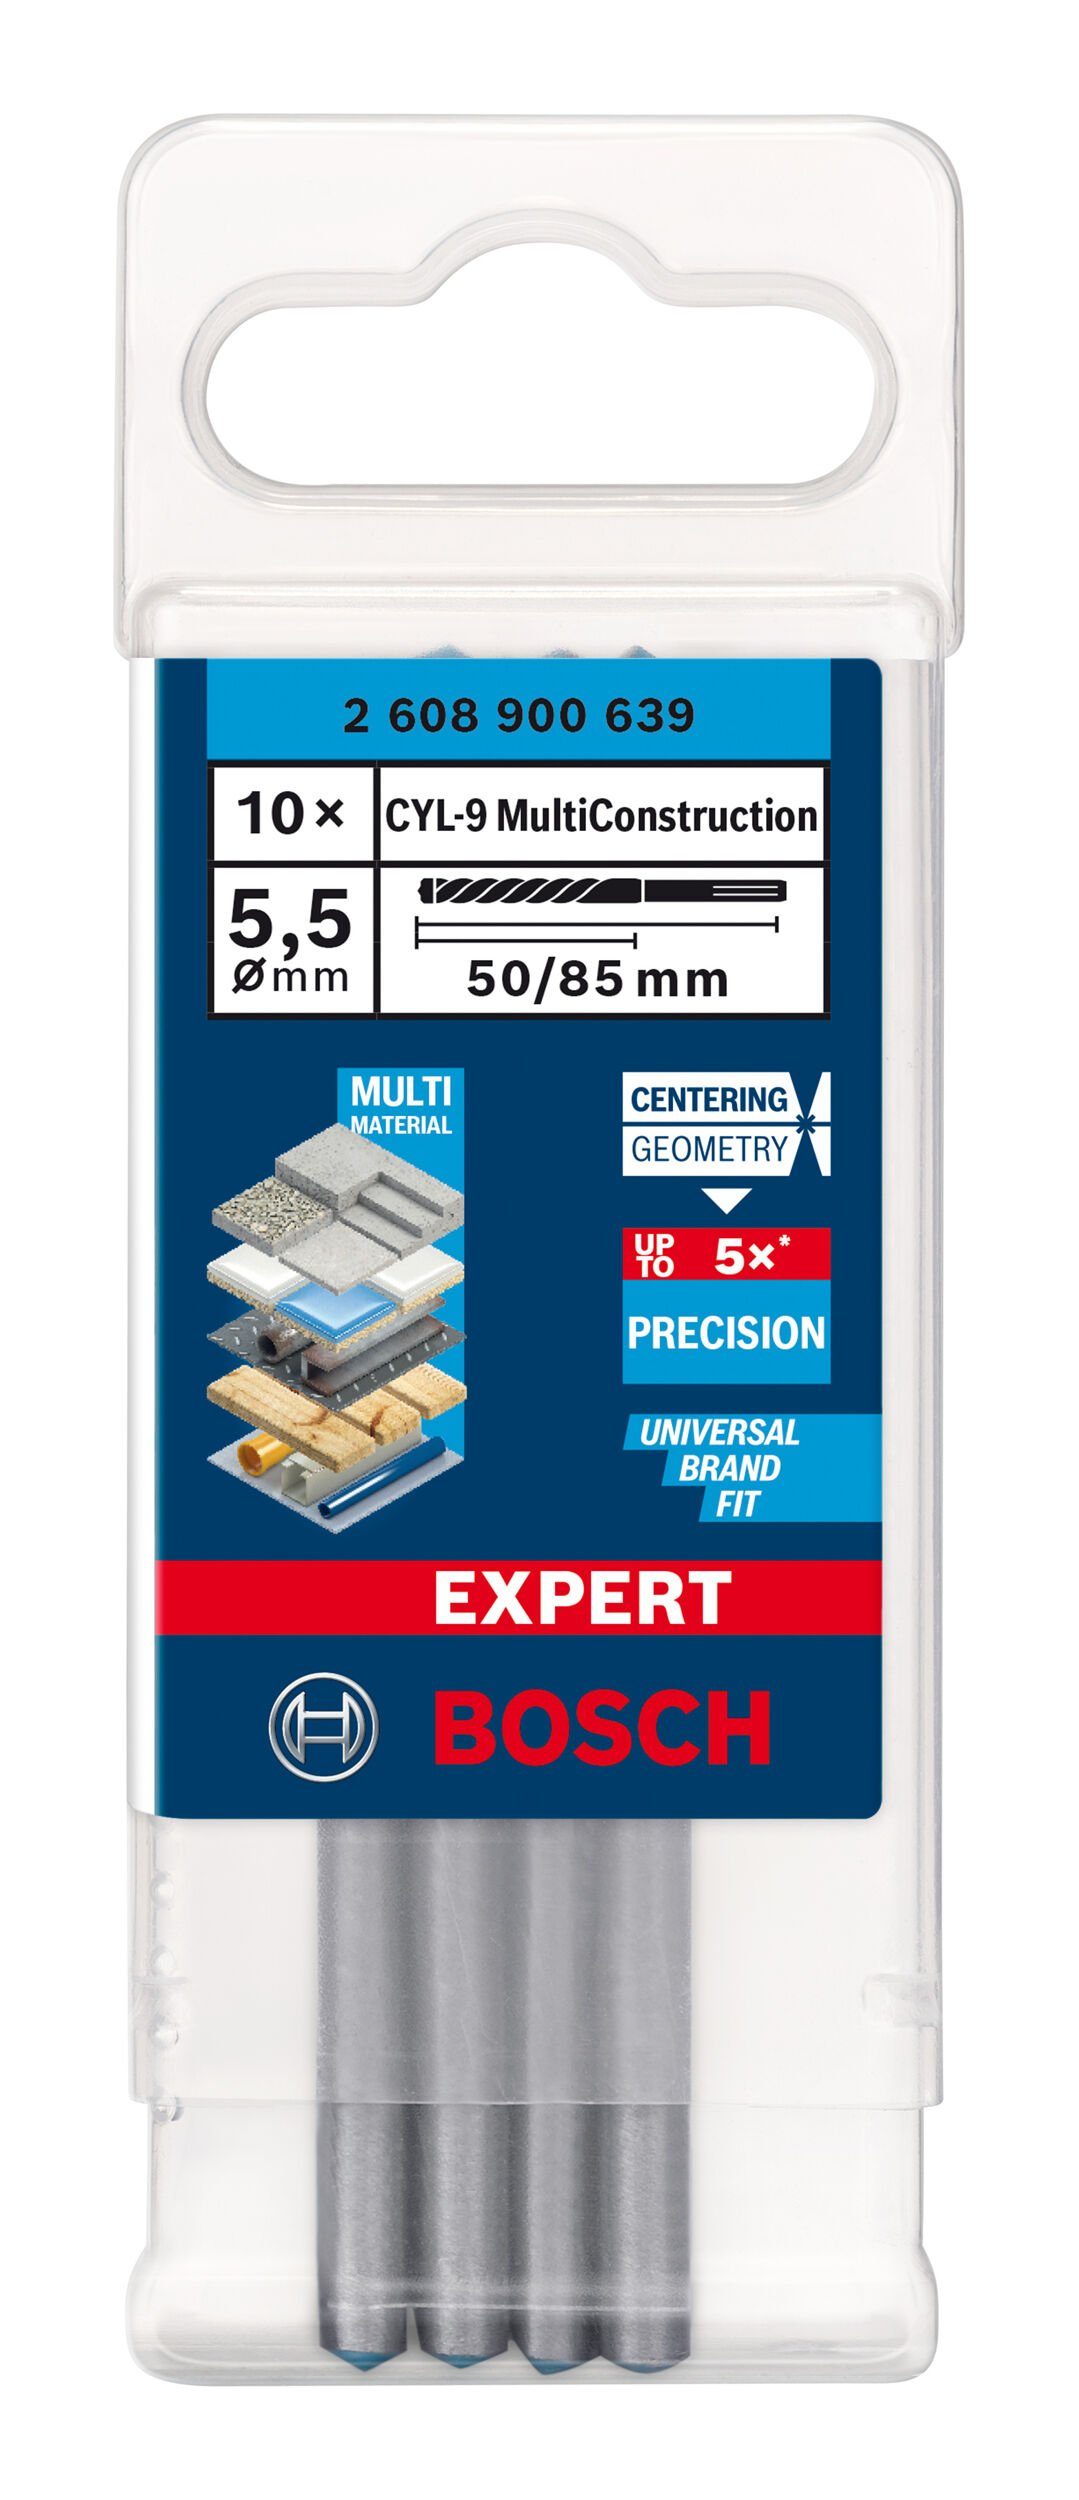 Expert - BOSCH MultiConstruction, x Expert Multi CYL-9 85 (10 CYL-9 Stück), Construction 5,5 mm 10er-Pack Universalbohrer x 50 -